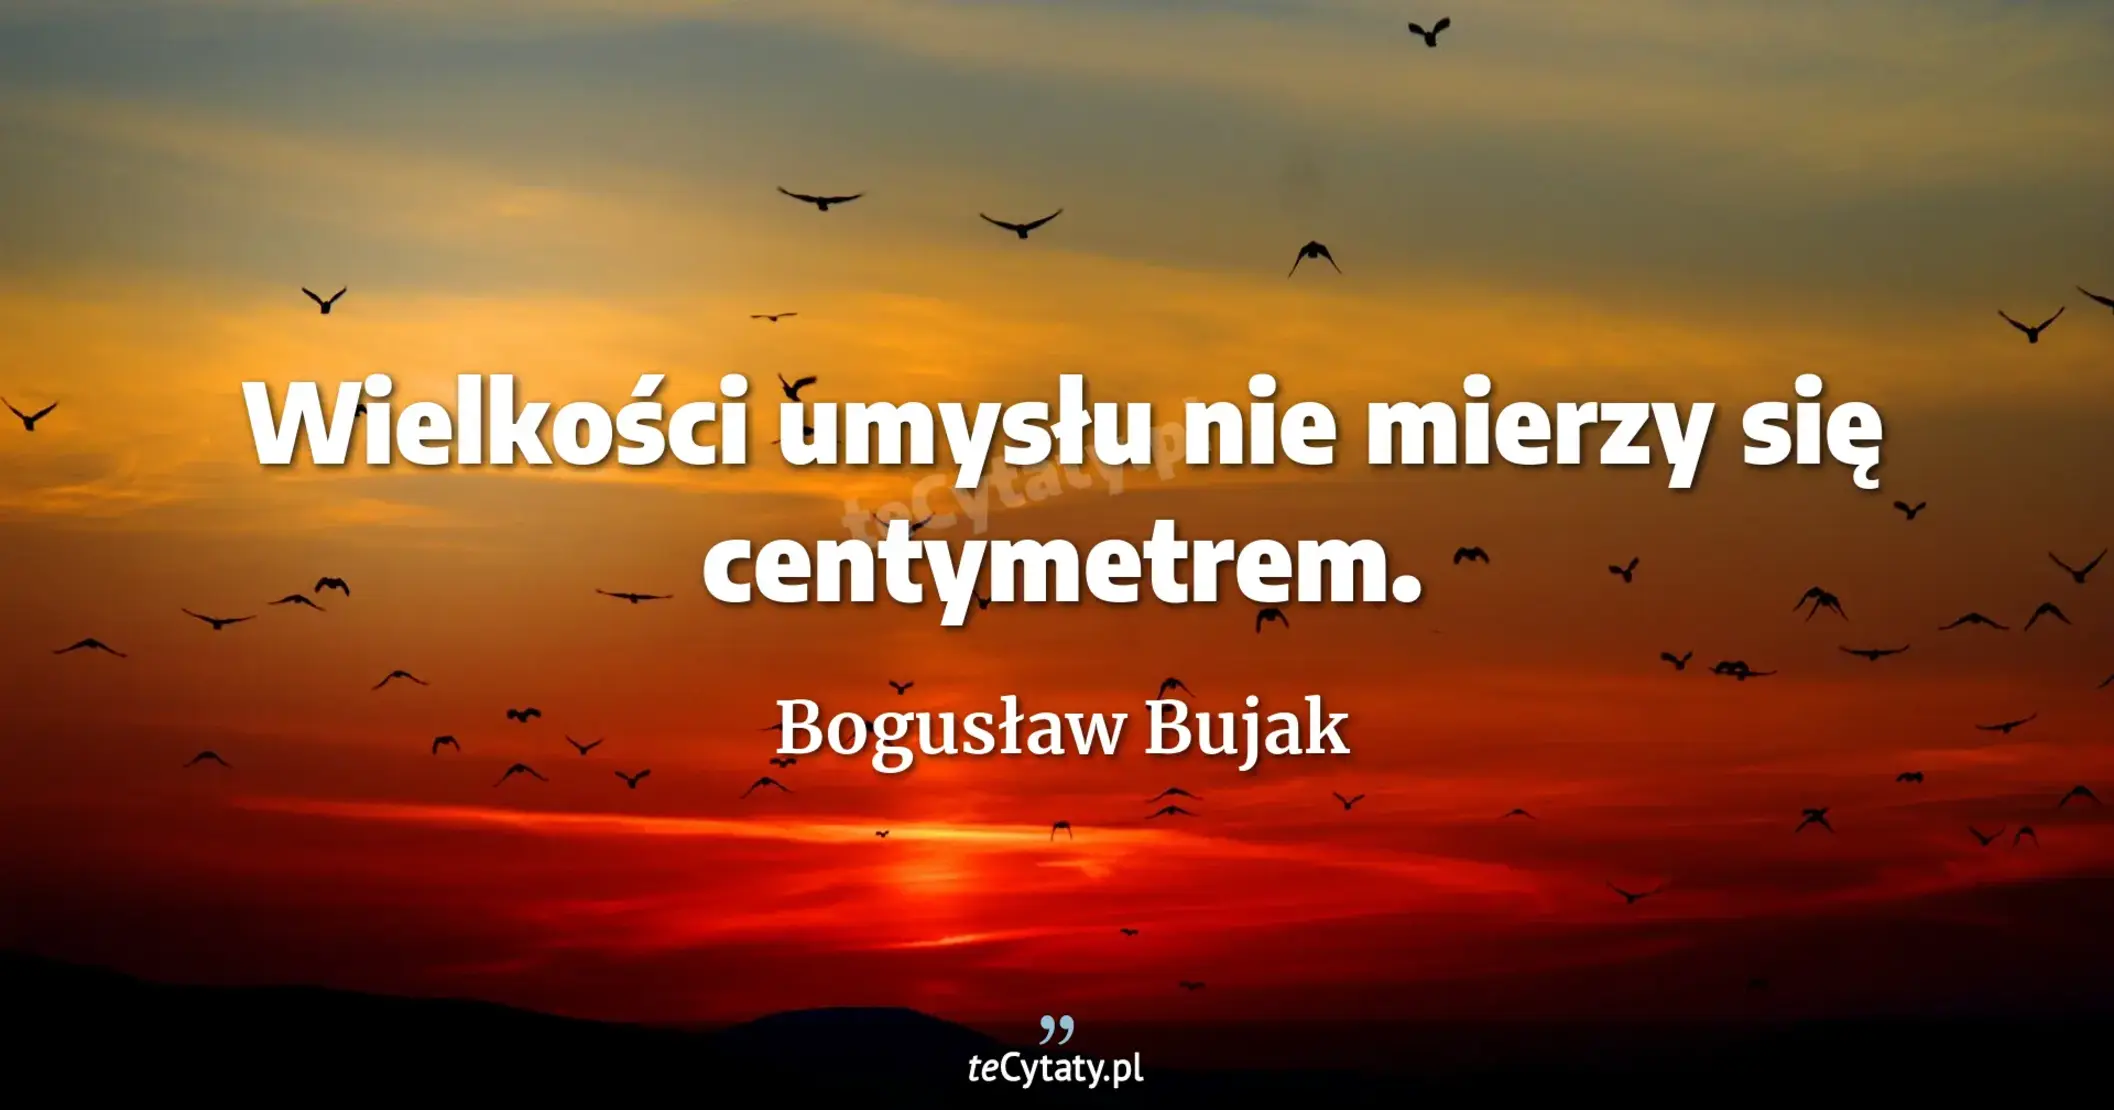 Wielkości umysłu nie mierzy się centymetrem. - Bogusław Bujak